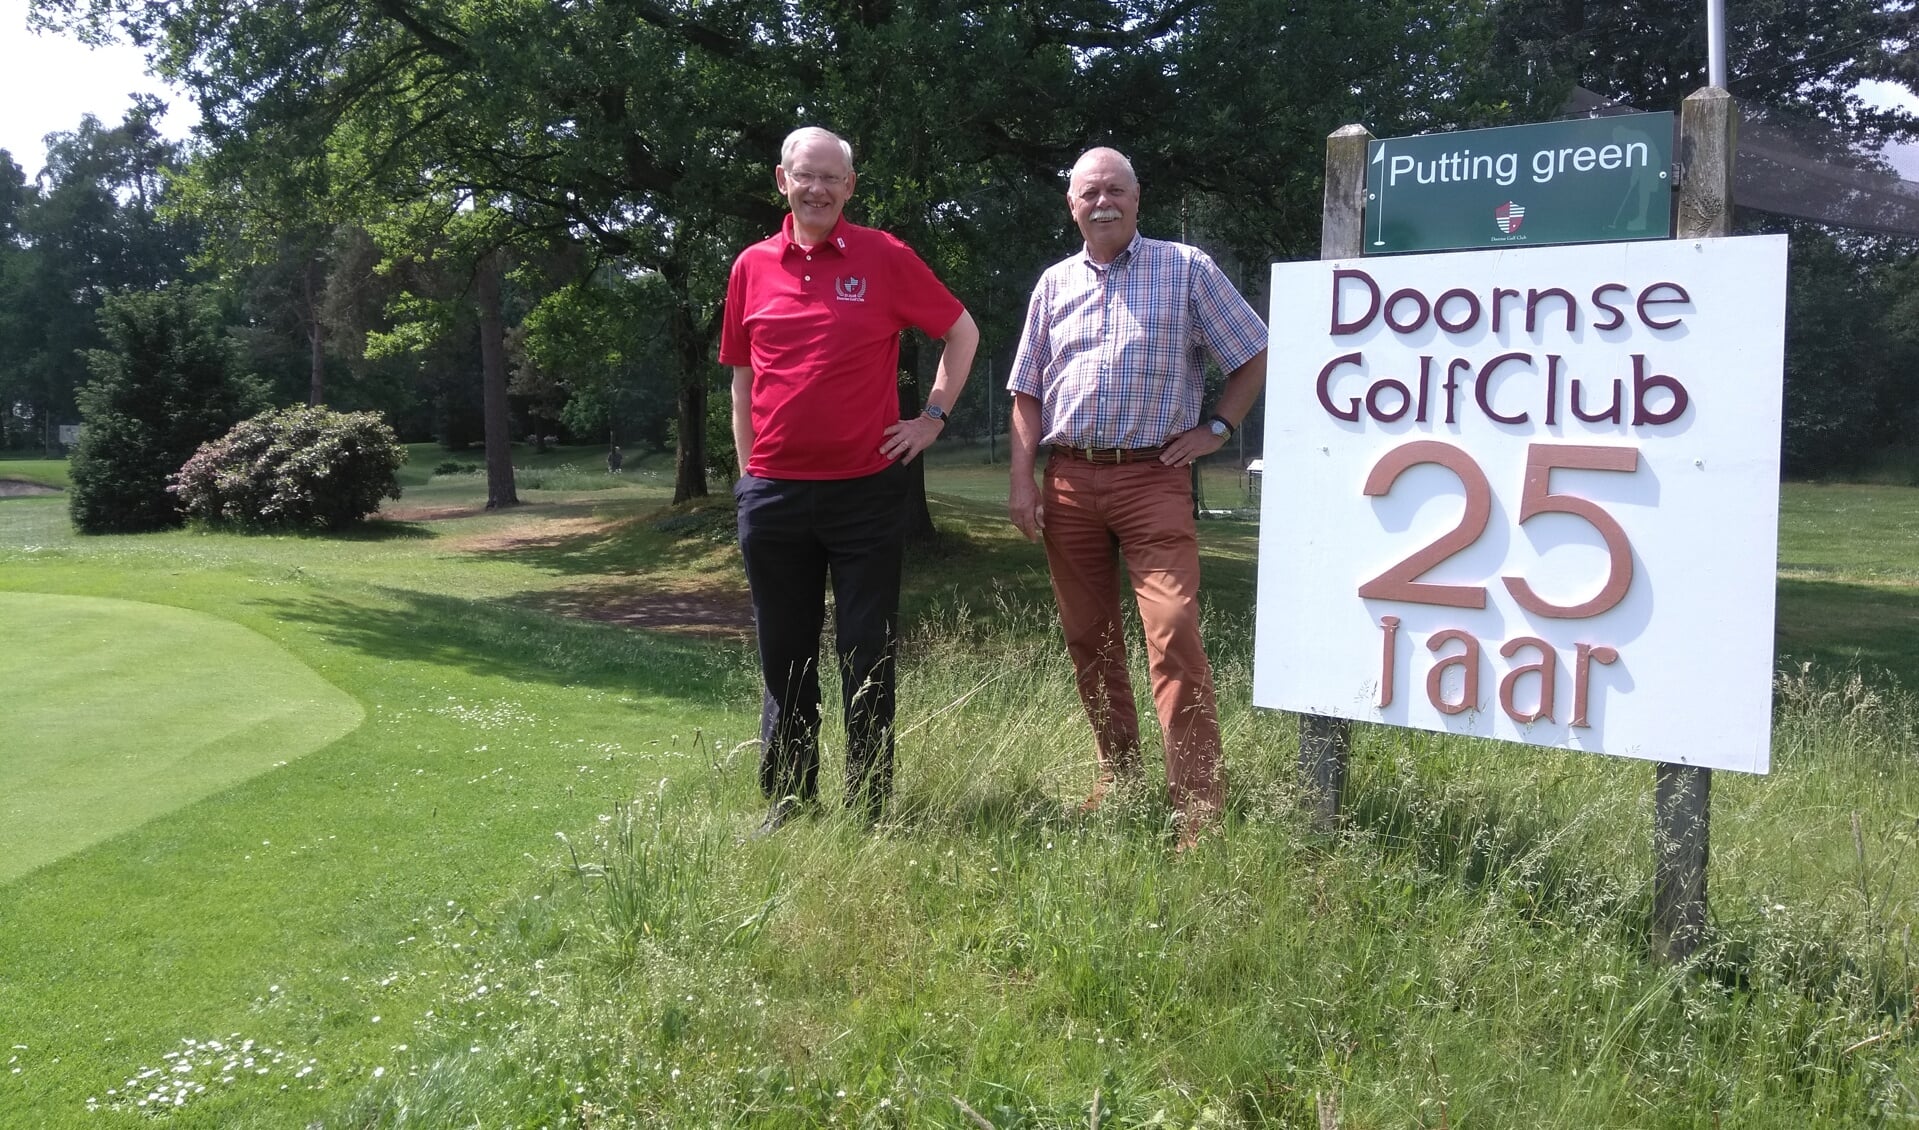 Bestuursleden Leo Tielenius Kruythoff en Pim Bouhuis op de Doornse Golf Club